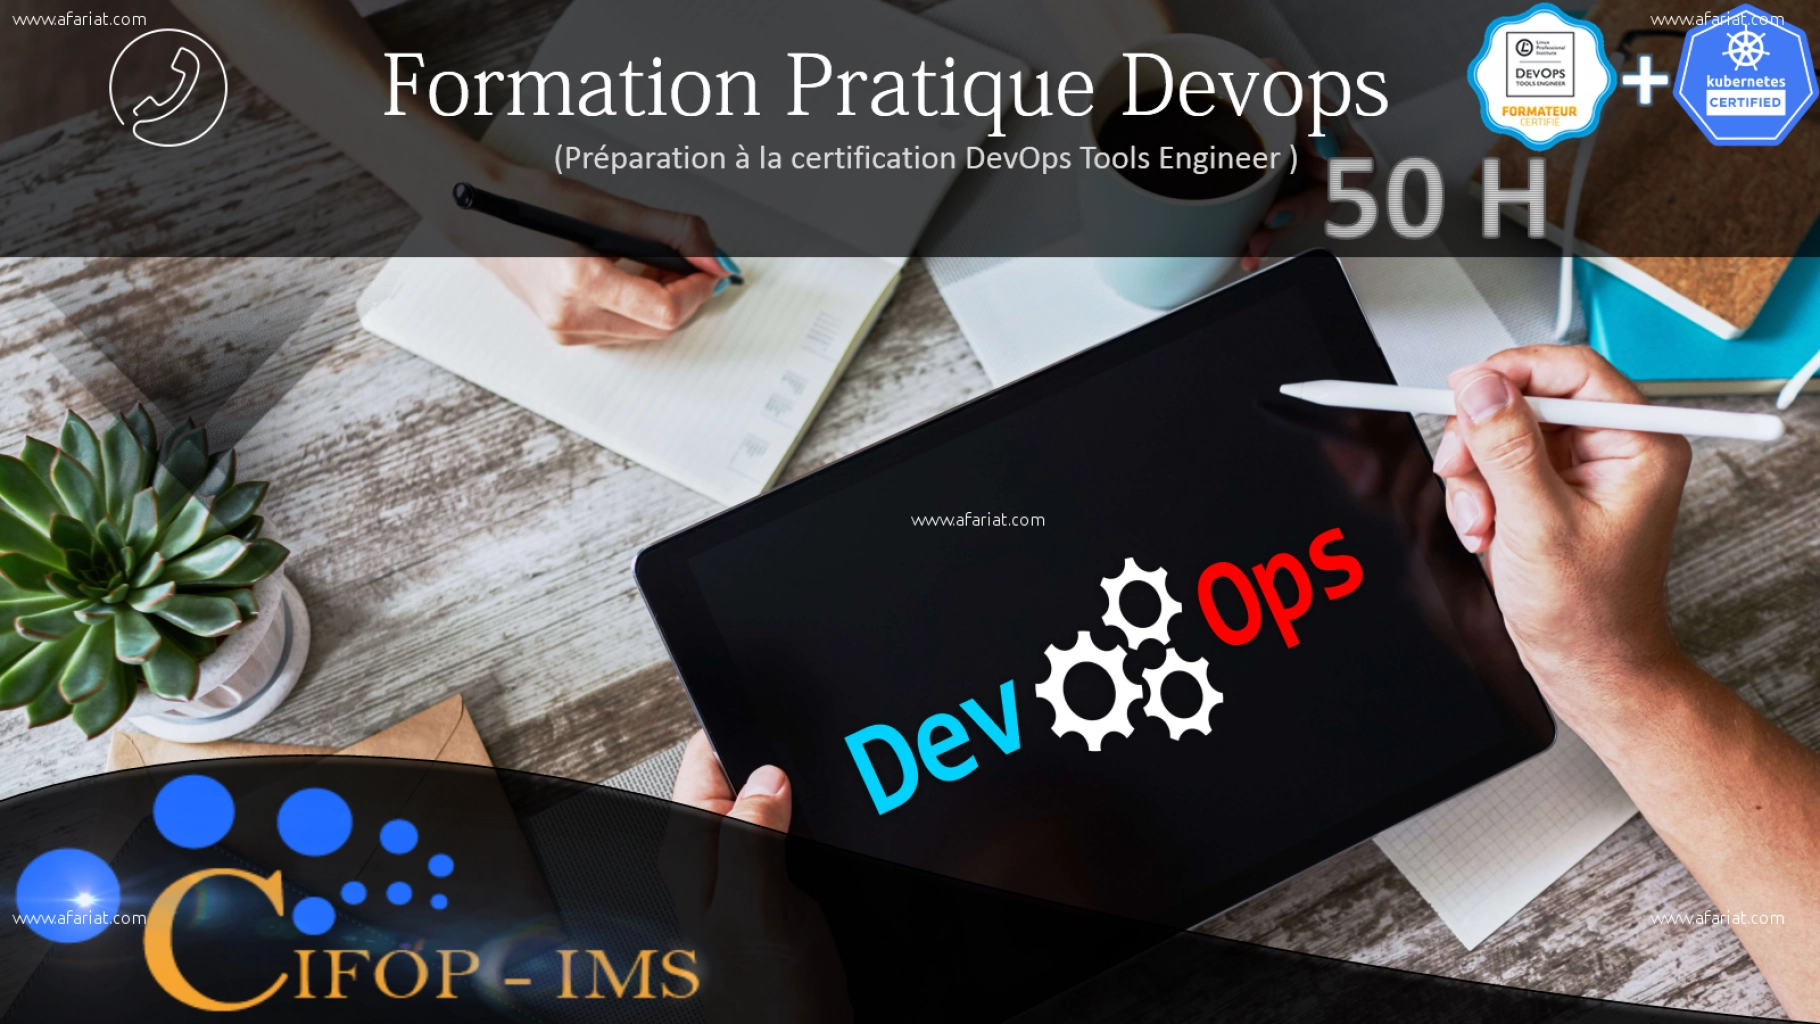 Formation Pratique DevOps & Certification